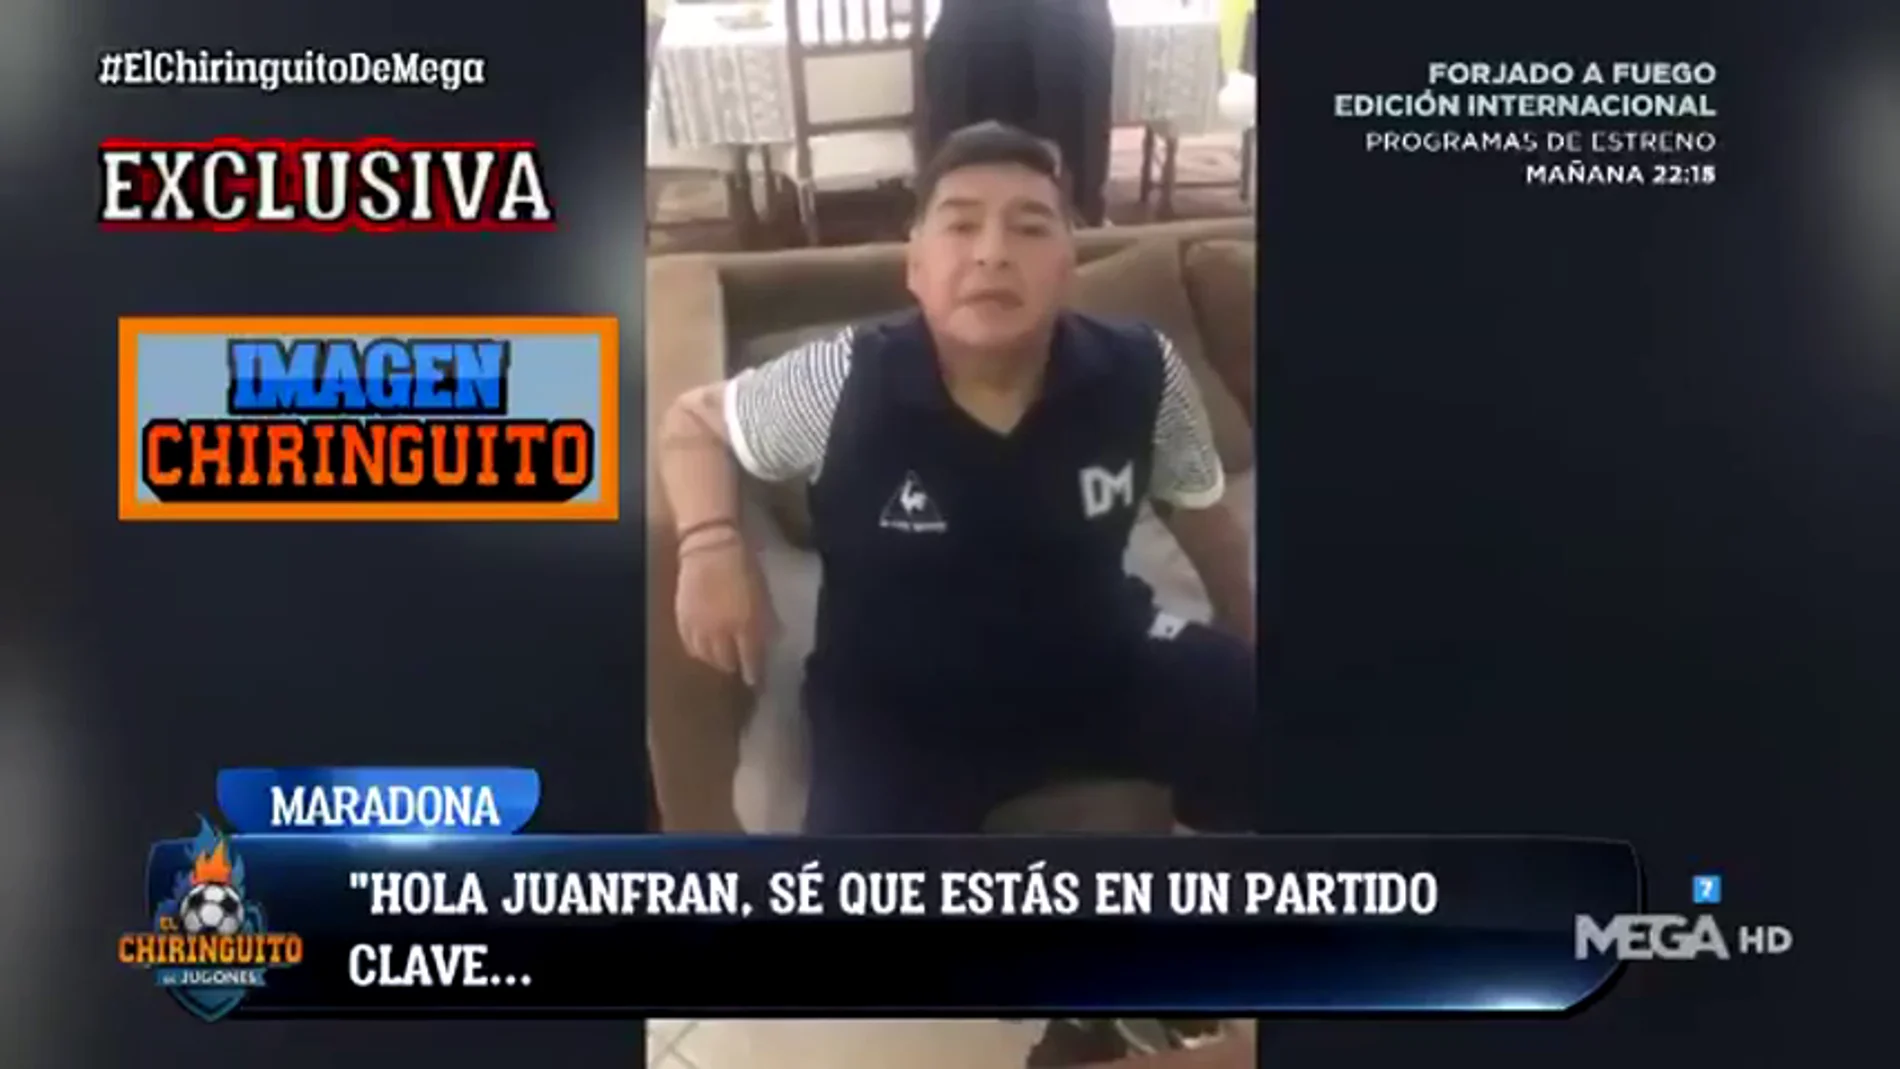 Exclusiva 'El Chiringuito': El vídeo de Maradona que motivó al Lugo para conseguir la permanencia